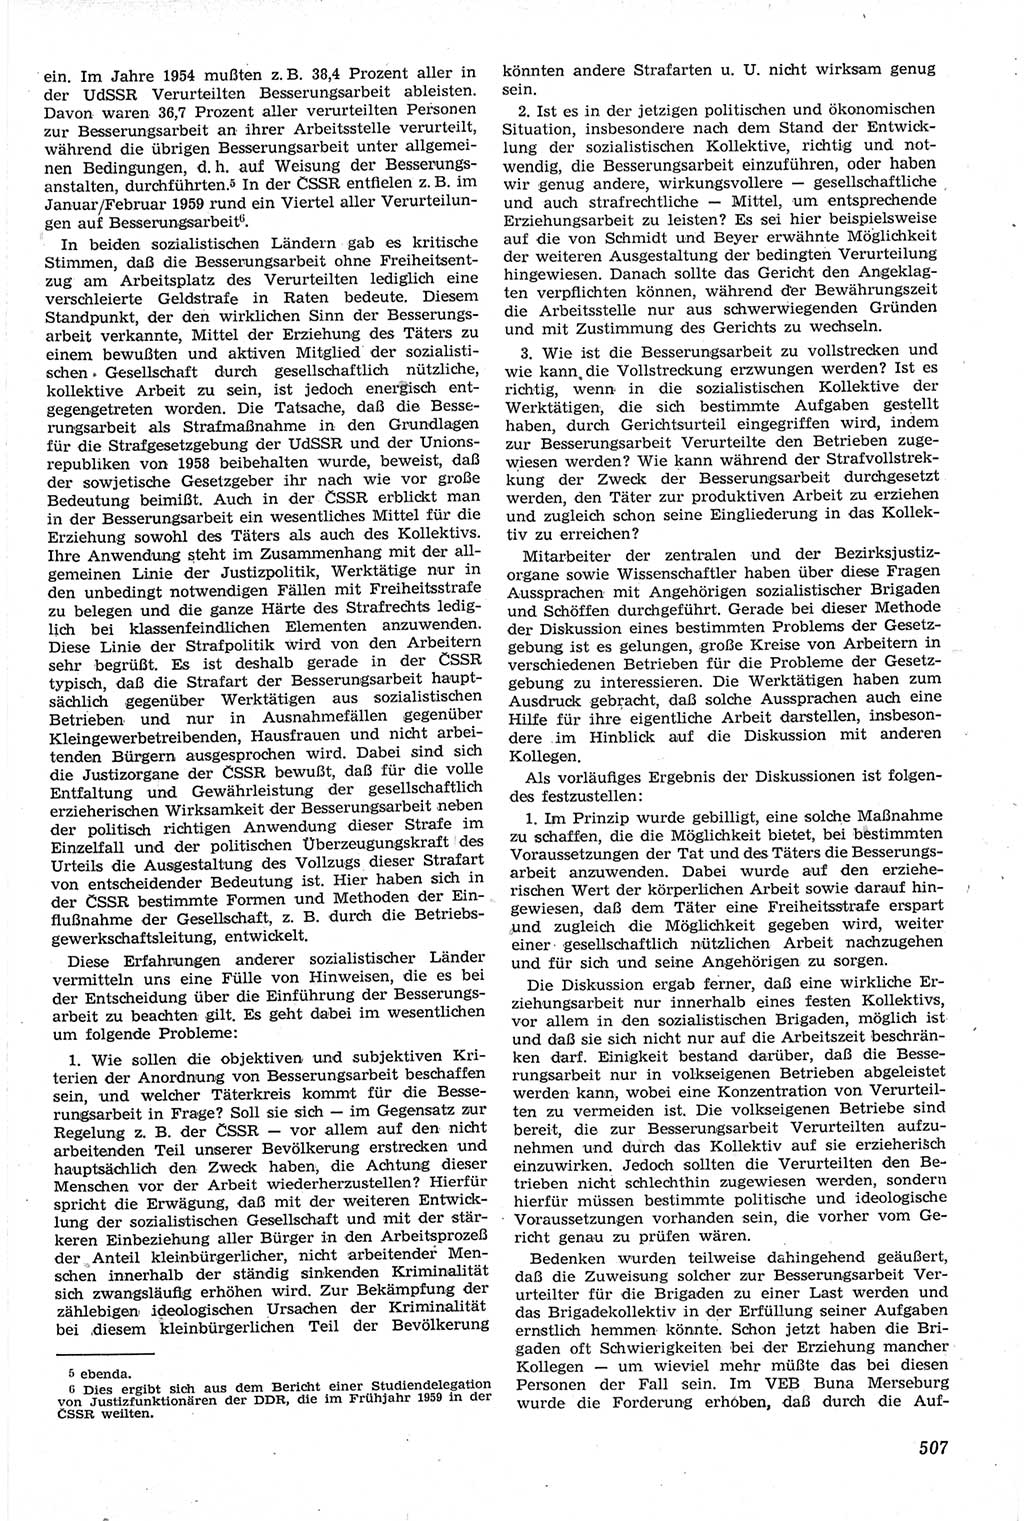 Neue Justiz (NJ), Zeitschrift für Recht und Rechtswissenschaft [Deutsche Demokratische Republik (DDR)], 14. Jahrgang 1960, Seite 507 (NJ DDR 1960, S. 507)